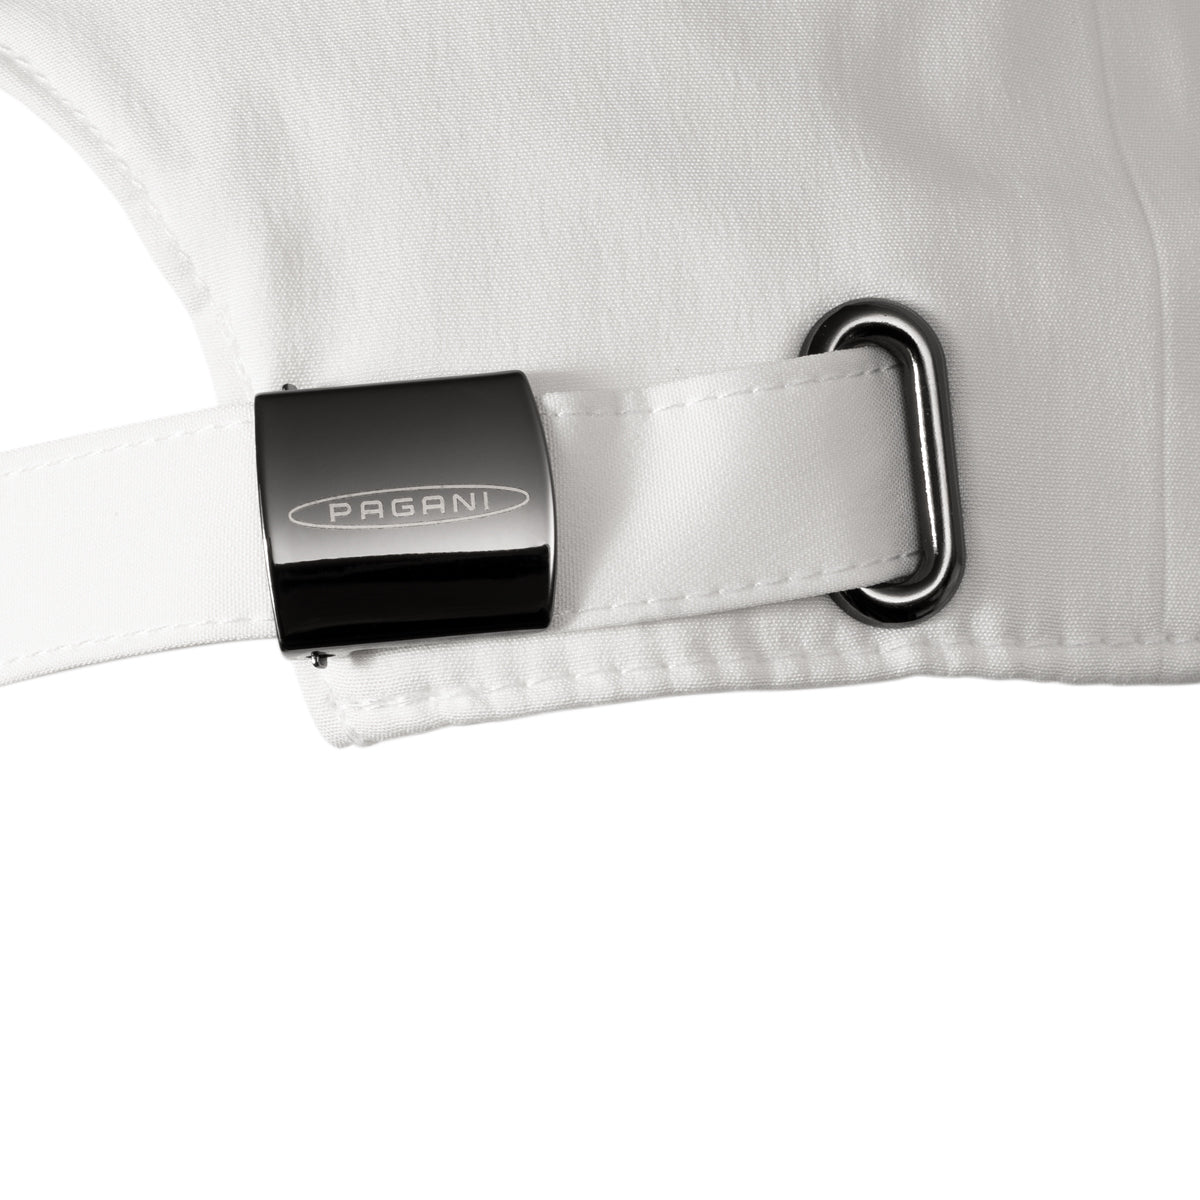 Gorra tejido técnico blanca | Team Collection